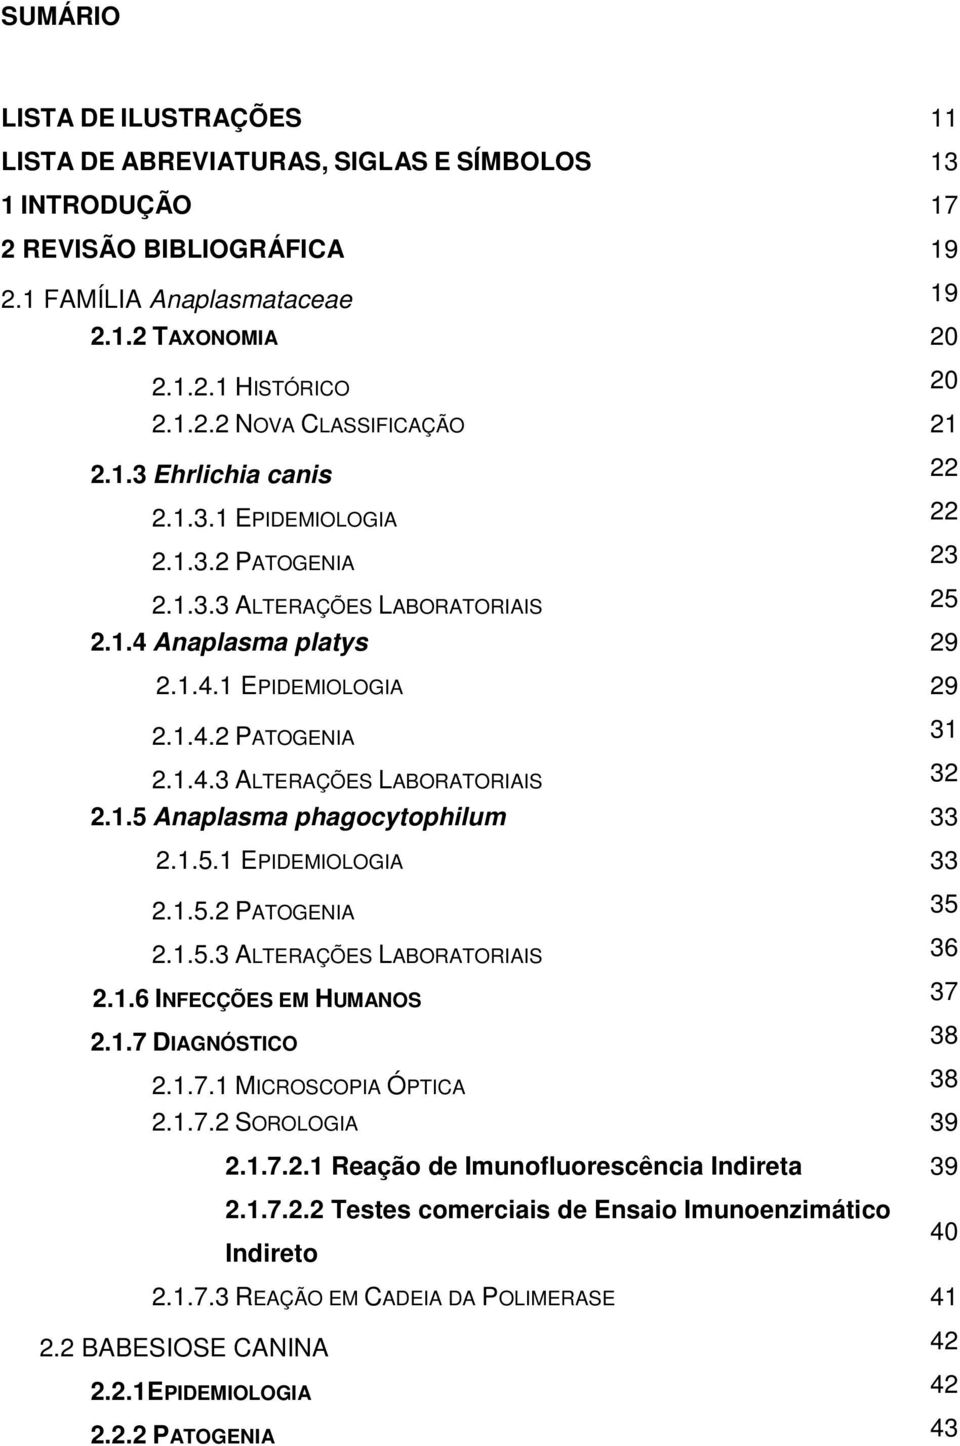 1.5 Anaplasma phagocytophilum 33 2.1.5.1 EPIDEMIOLOGIA 33 2.1.5.2 PATOGENIA 35 2.1.5.3 ALTERAÇÕES LABORATORIAIS 36 2.1.6 INFECÇÕES EM HUMANOS 37 2.1.7 DIAGNÓSTICO 38 2.1.7.1 MICROSCOPIA ÓPTICA 38 2.1.7.2 SOROLOGIA 39 2.